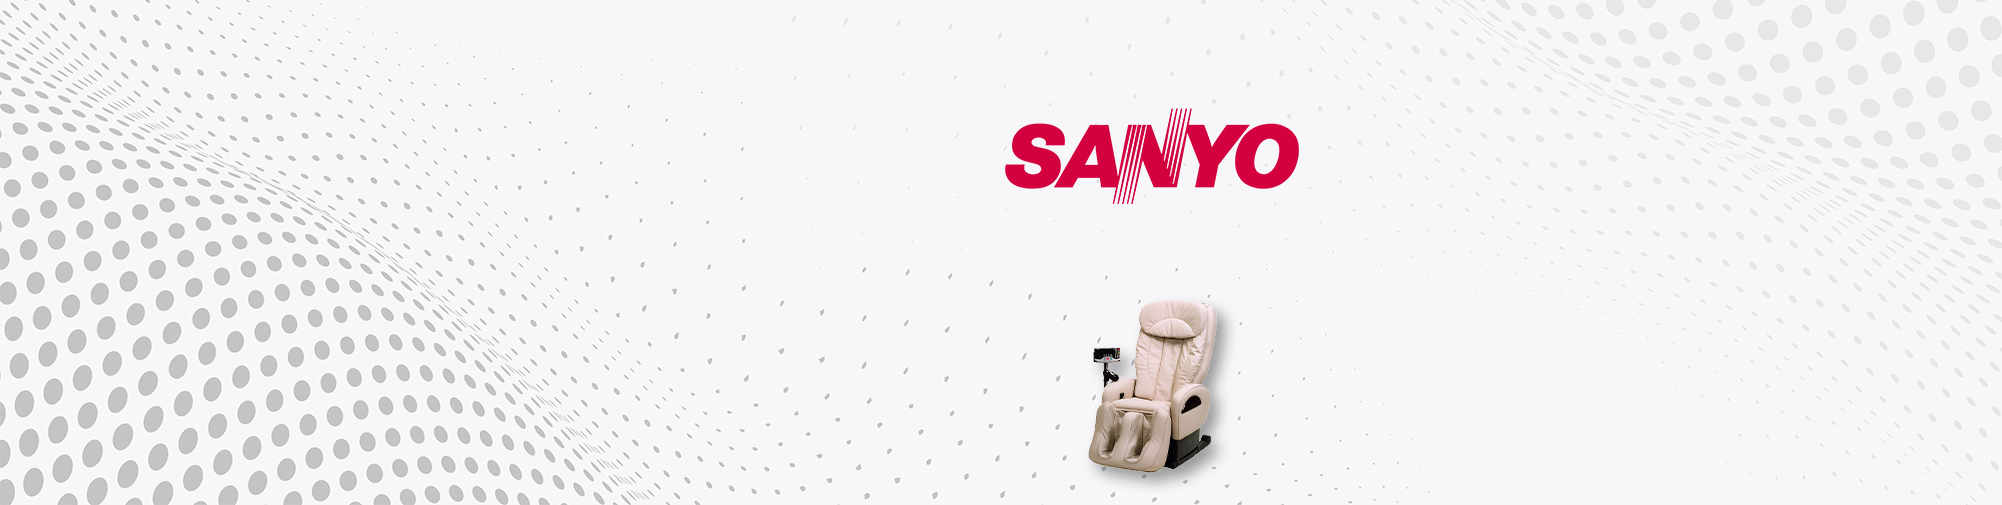 SANYO - Công ty thương hiệu Nhật Bản | Thế giới ghế massage